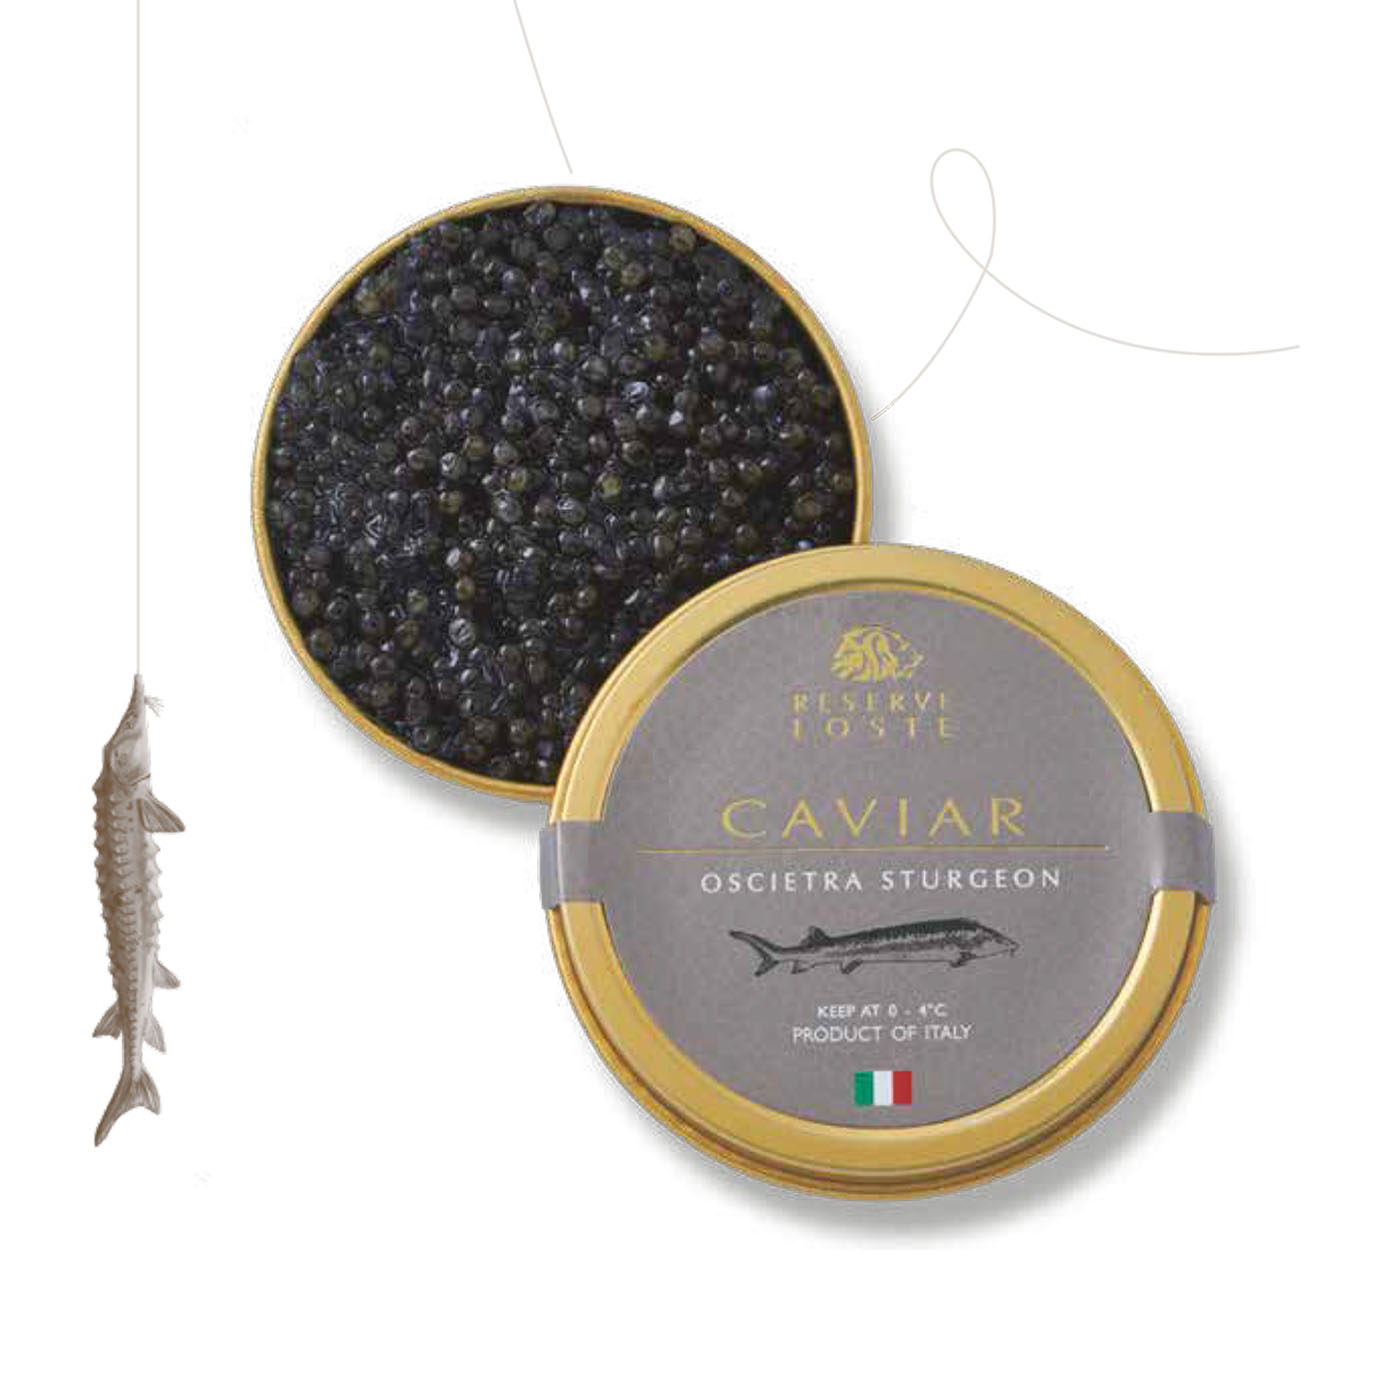 Osetrova caviar de l'esturgeon russe acipenser gueldenstaedtii 30g